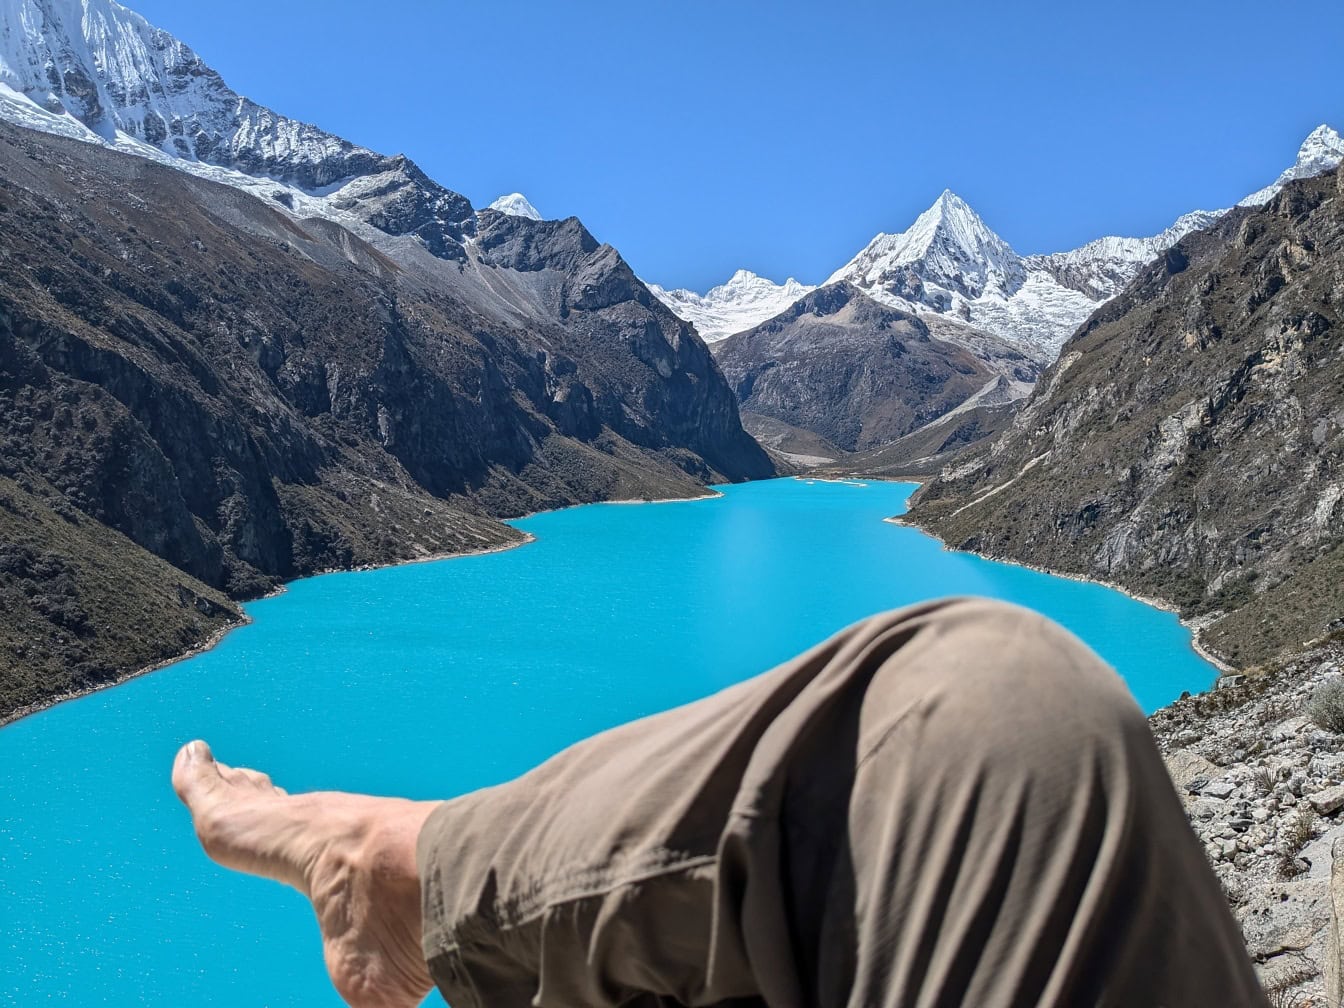 Personens barfodede ben i forgrunden med Paron-søen i baggrunden ved Cordillera Blanca i Andesbjergene i Peru